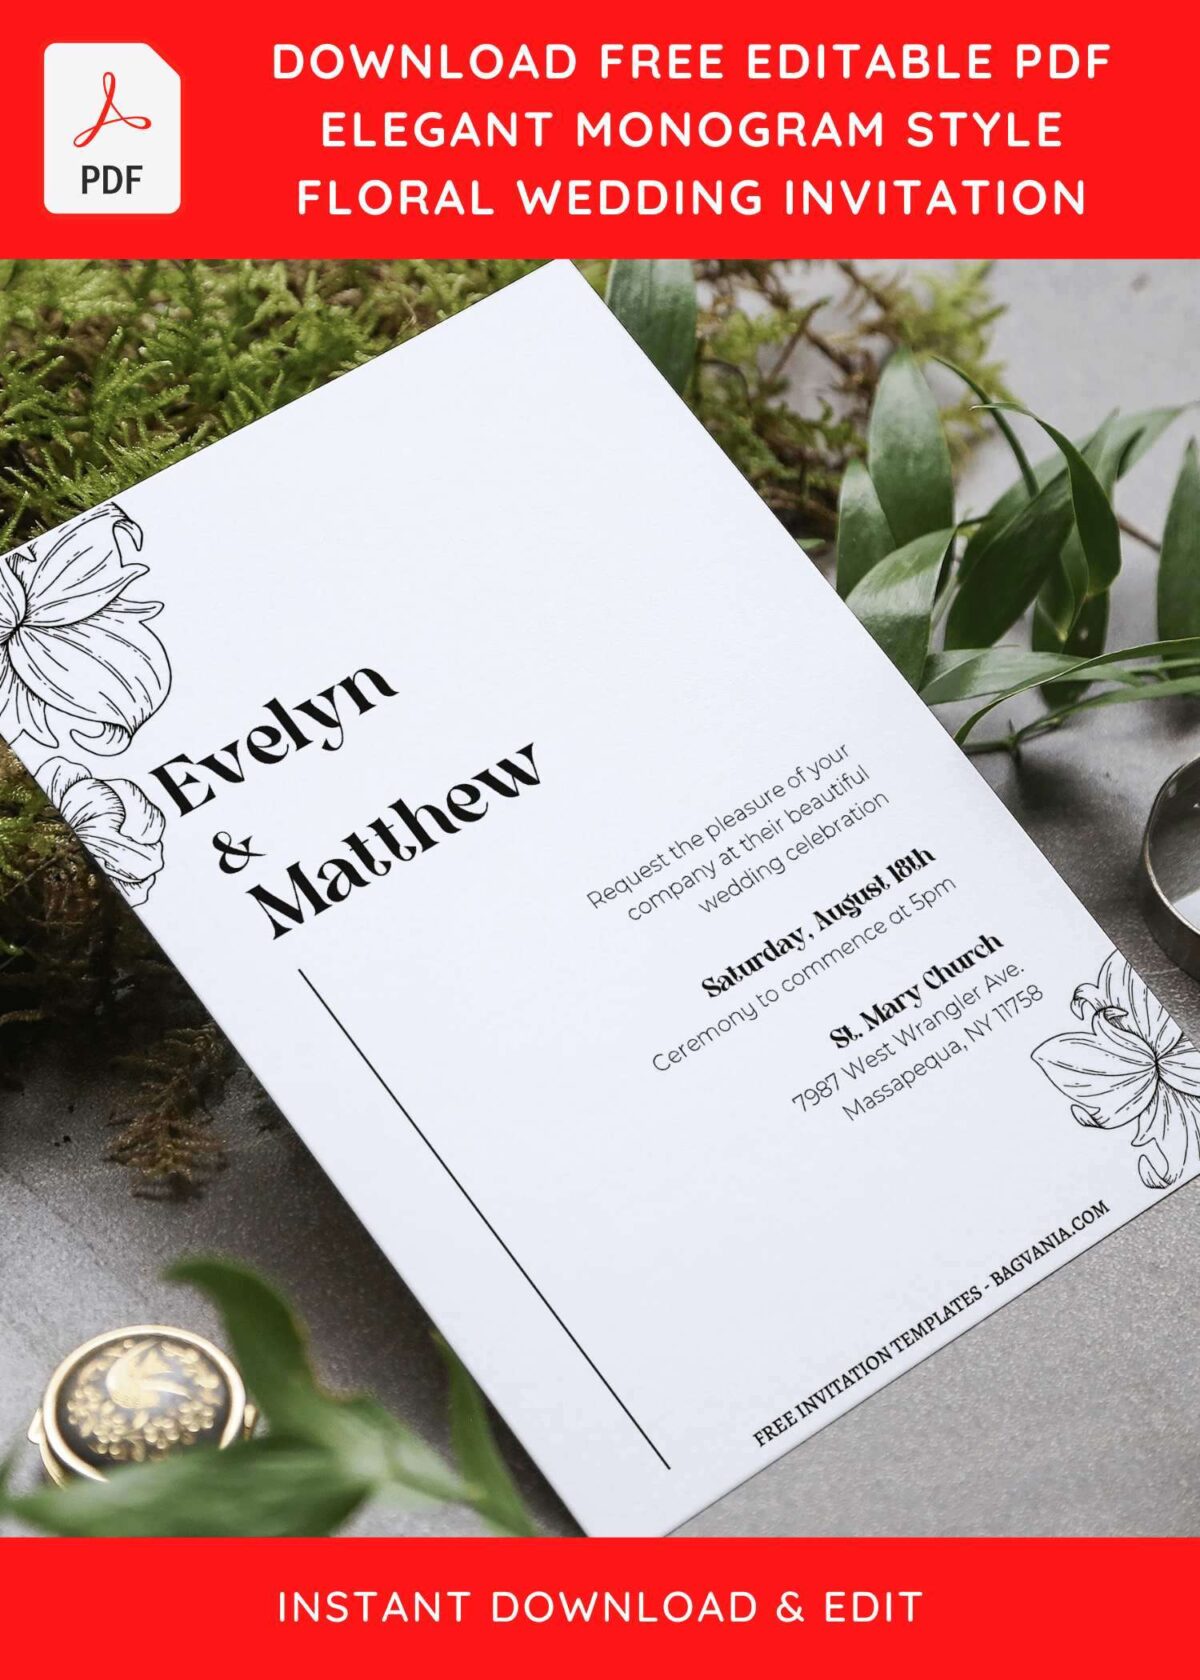 (Free Editable PDF) Minimalist Floral Linework Wedding Invitation Templates